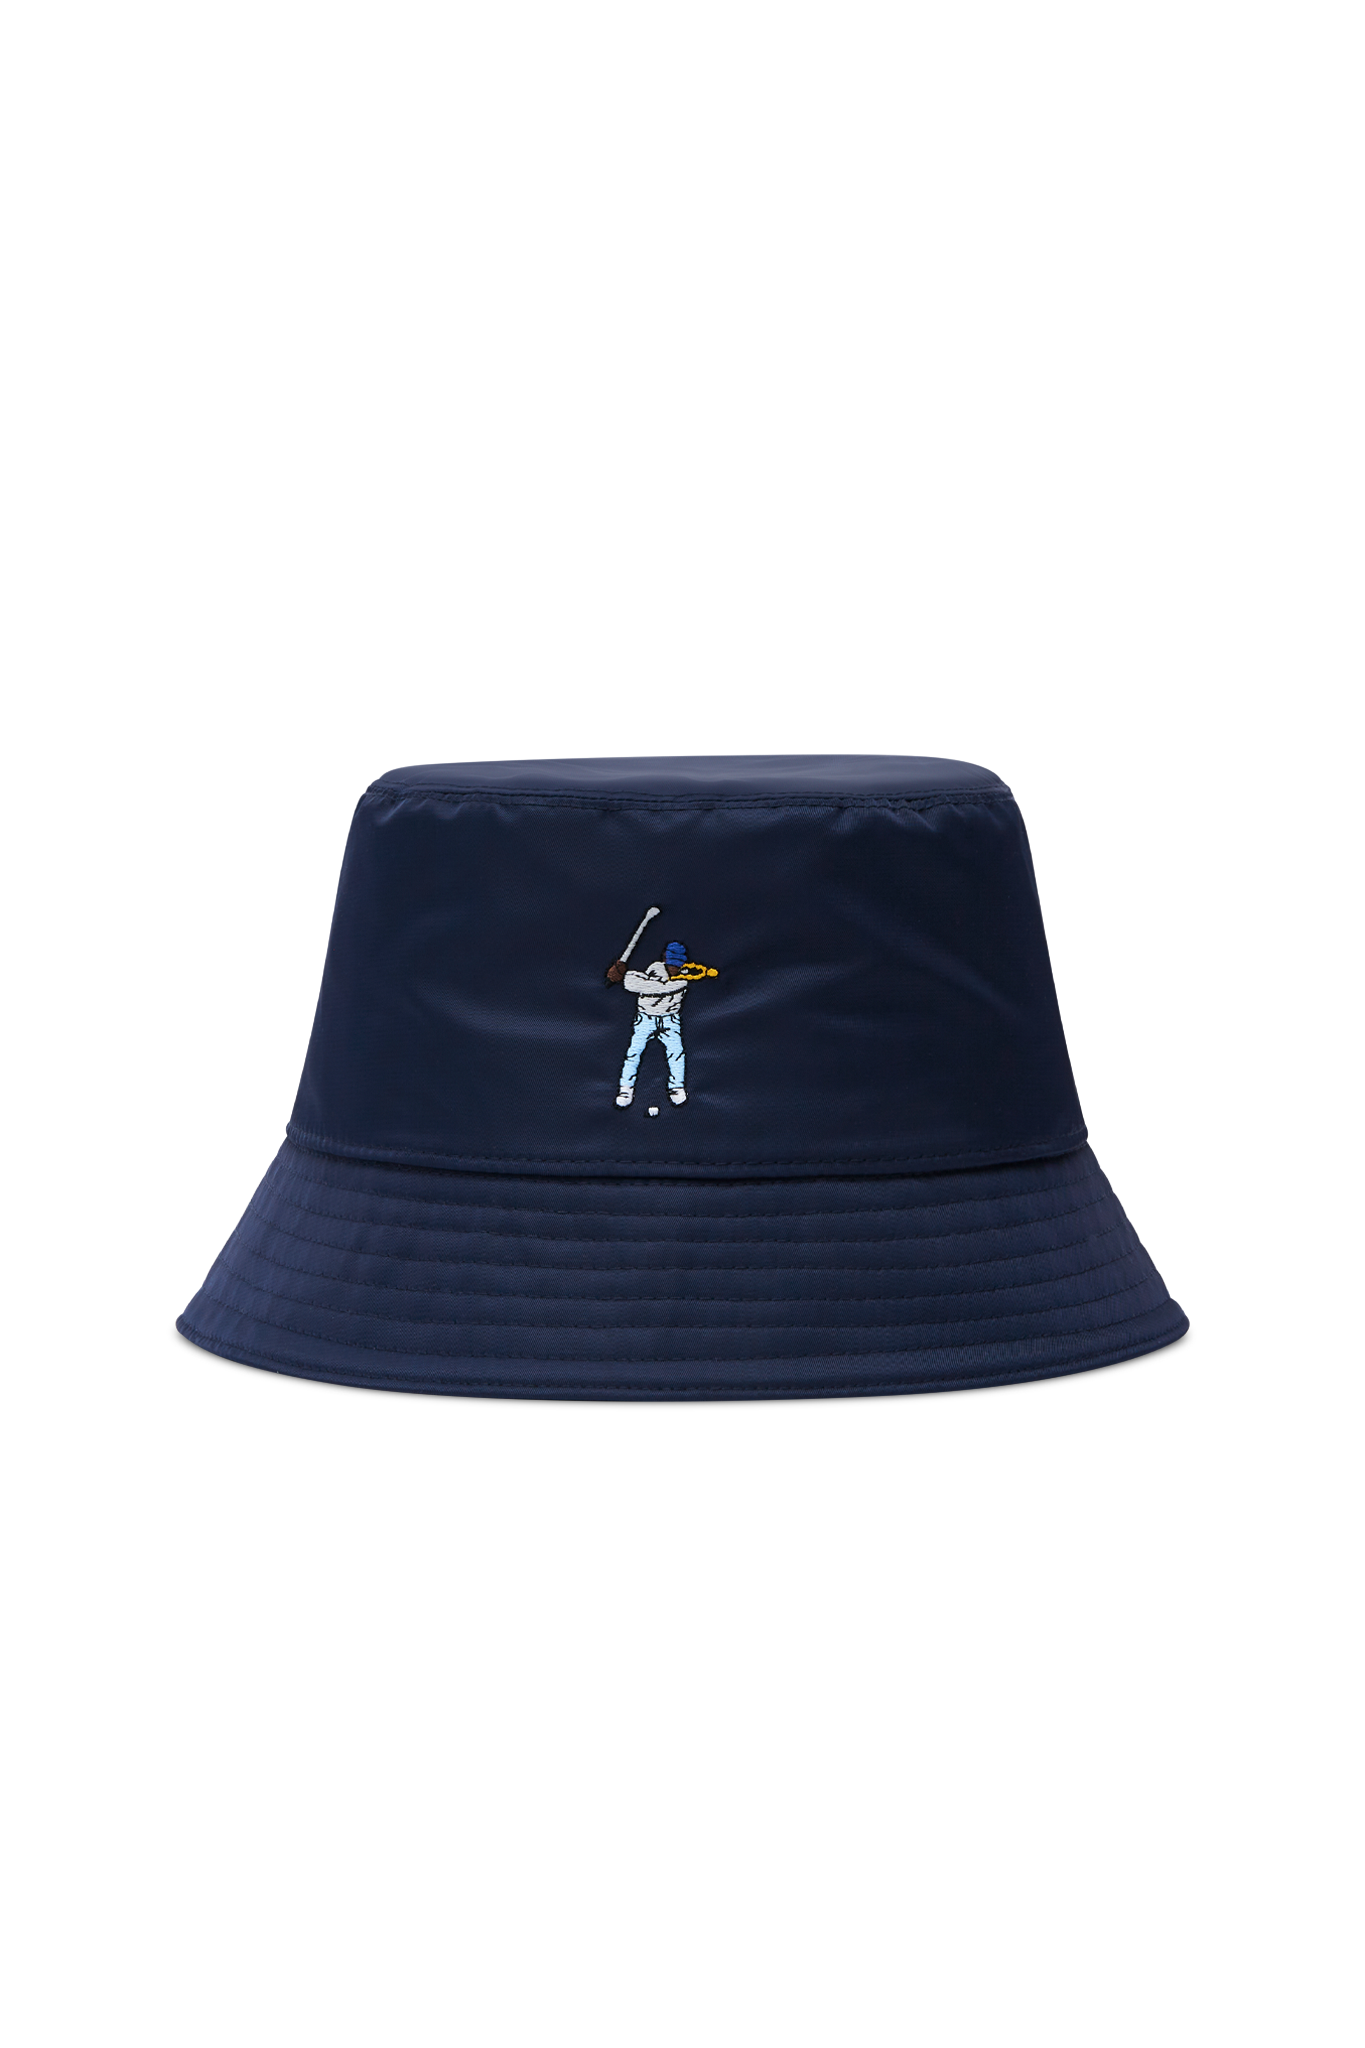 Eastside Golf Nylon Bucket Hat Navy